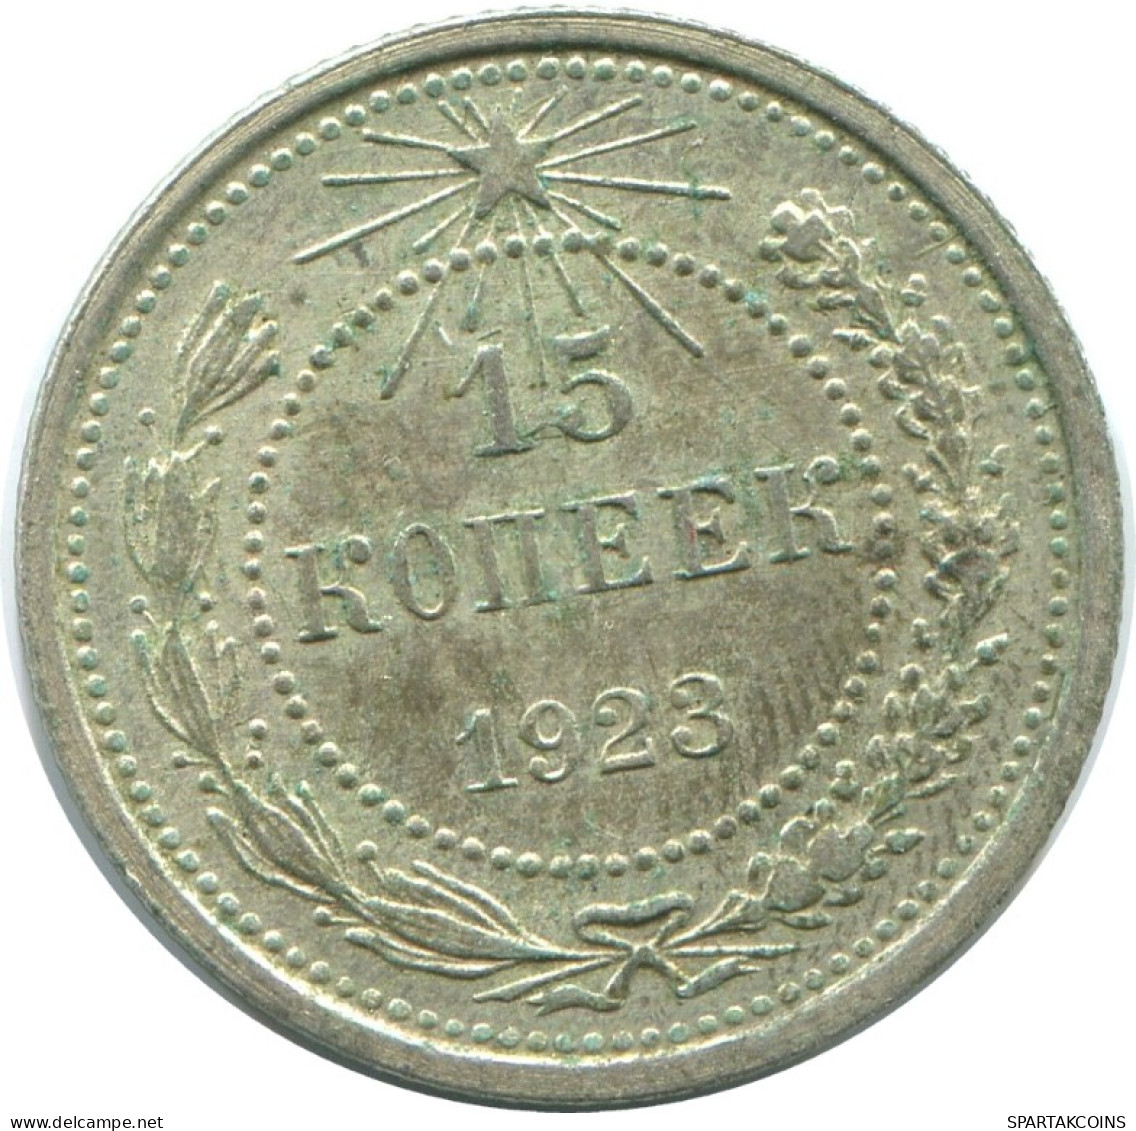 15 KOPEKS 1923 RUSSLAND RUSSIA RSFSR SILBER Münze HIGH GRADE #AF130.4.D.A - Rusia